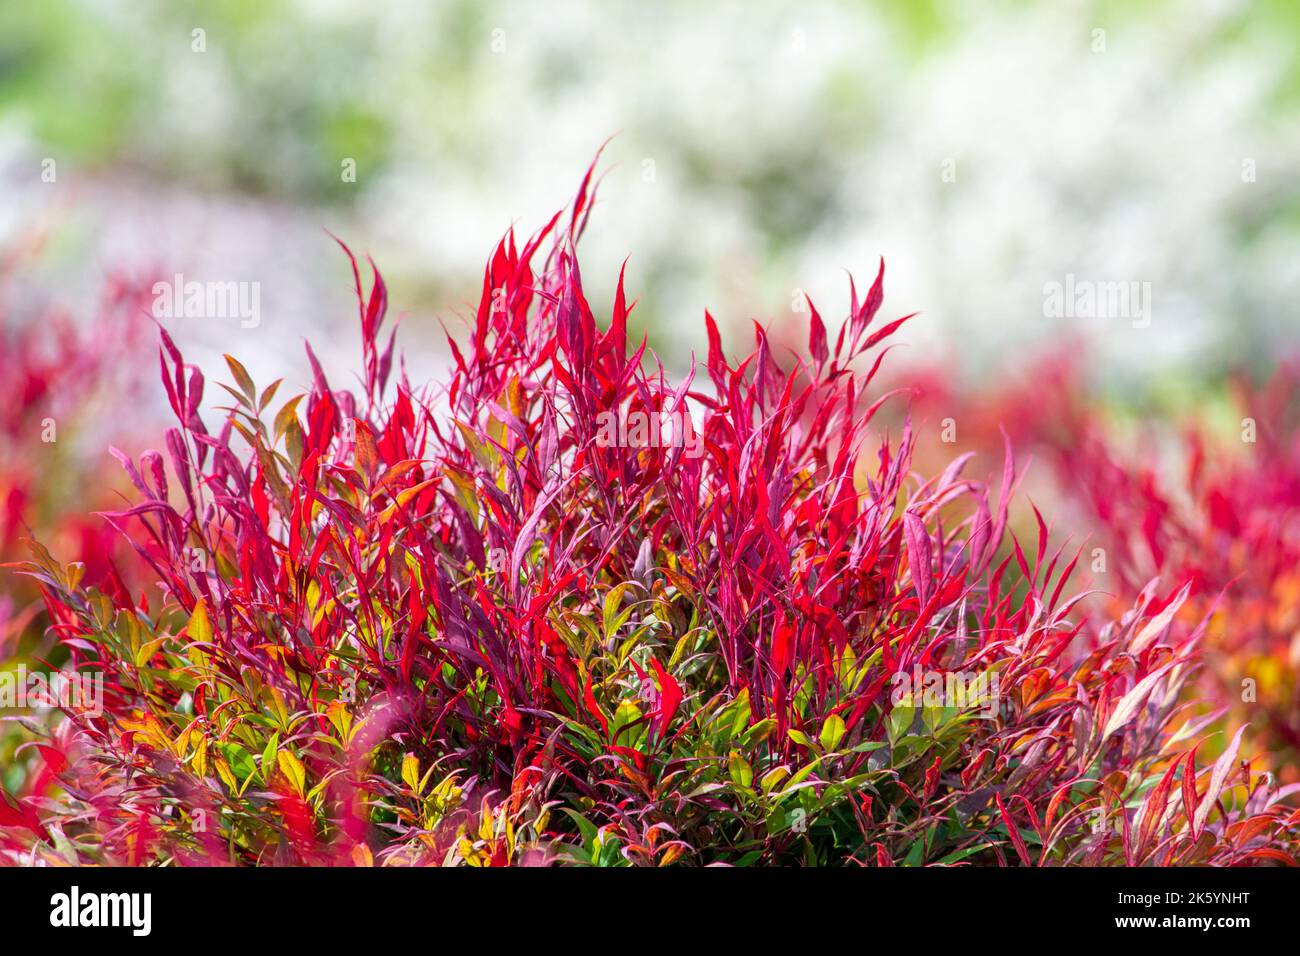 Ein Flush von neuen, leuchtend roten Blättern auf einer Nandina saxifragaceae ‘Colourscape’ Pflanze, was ein neues Frühlingswachstum im Garten bedeutet. Stockfoto